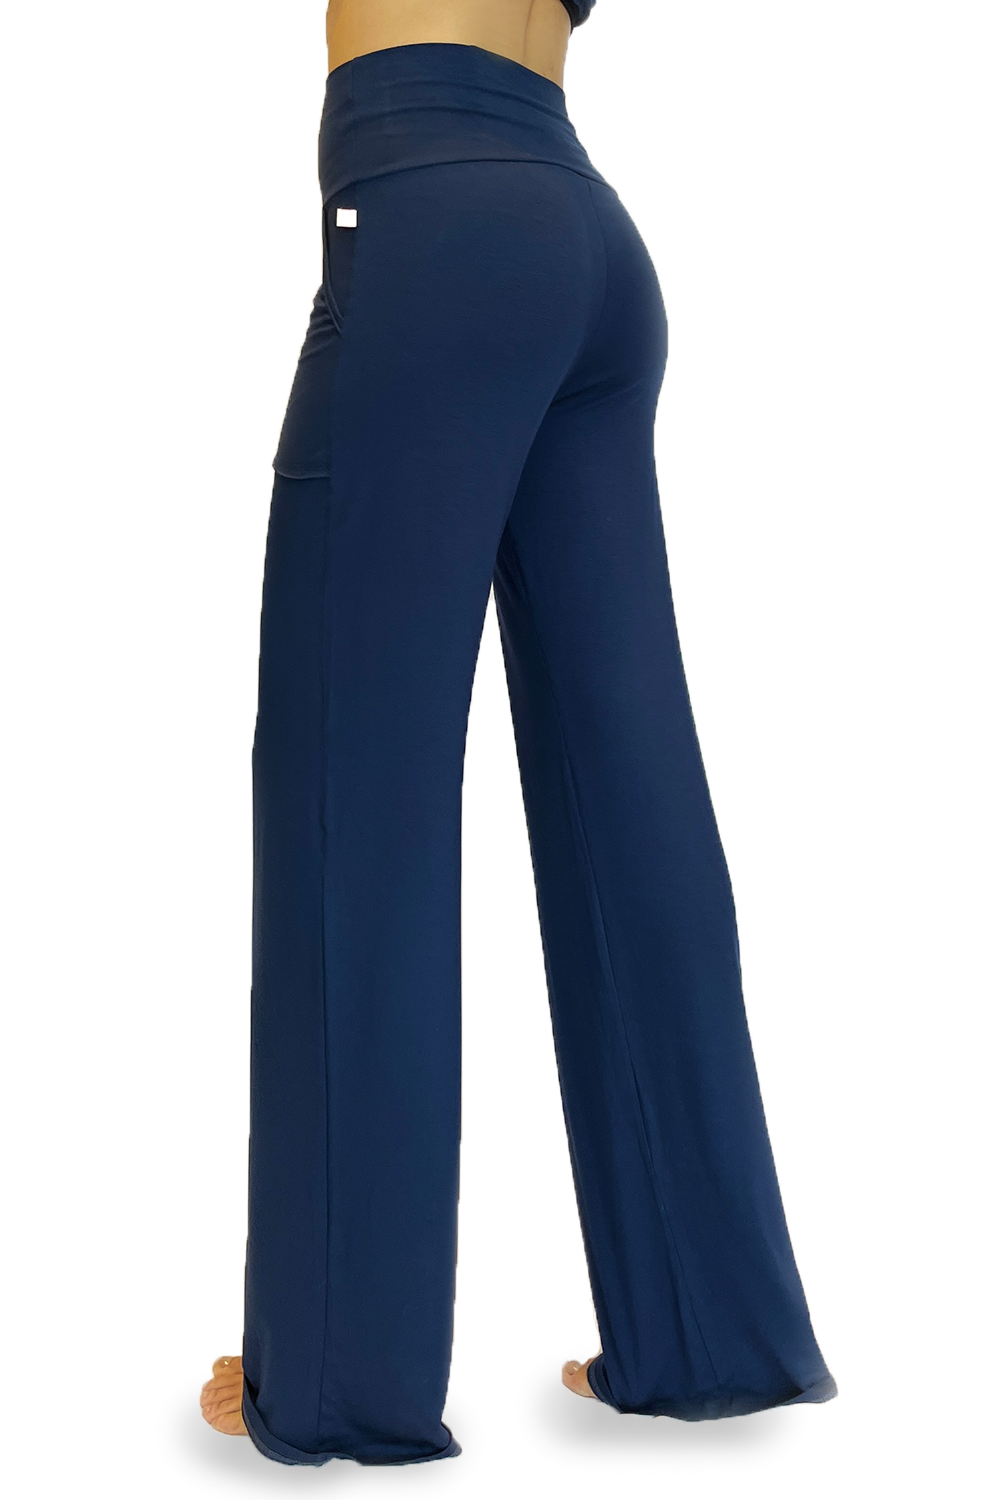 Bora-Bora Comfy Pants, Navy Blue, Viscose